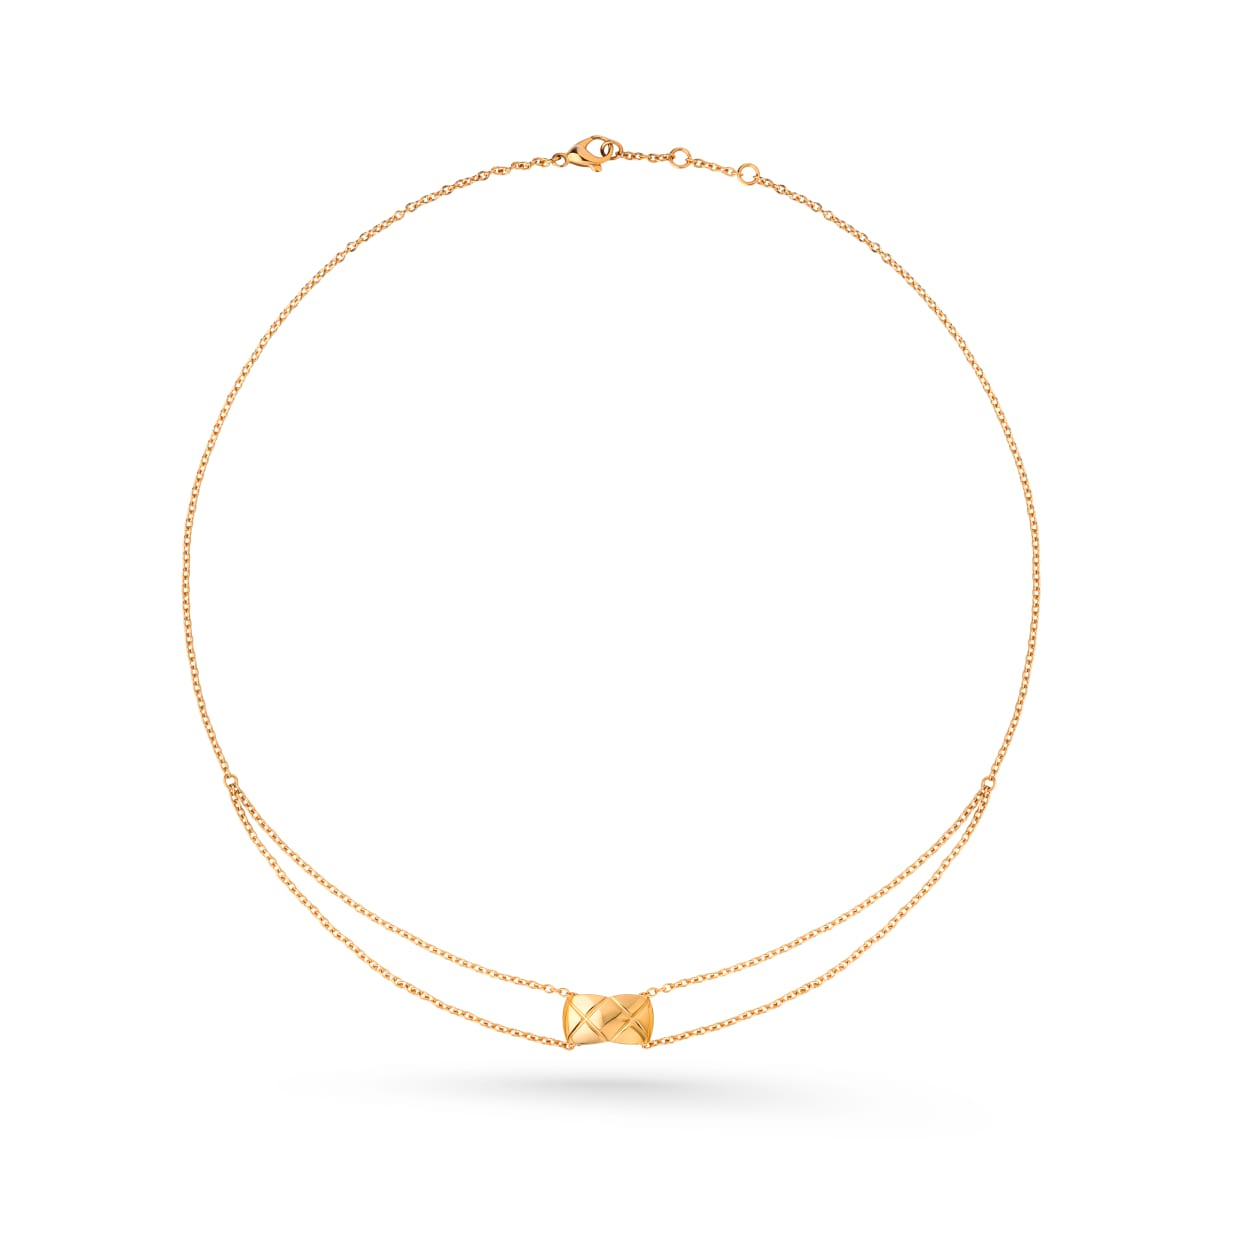 Atacado OEM acolchoado motivo, colar de ouro amarelo 18K design personalizado seu fabricante de joias OEM/ODM Jewelry